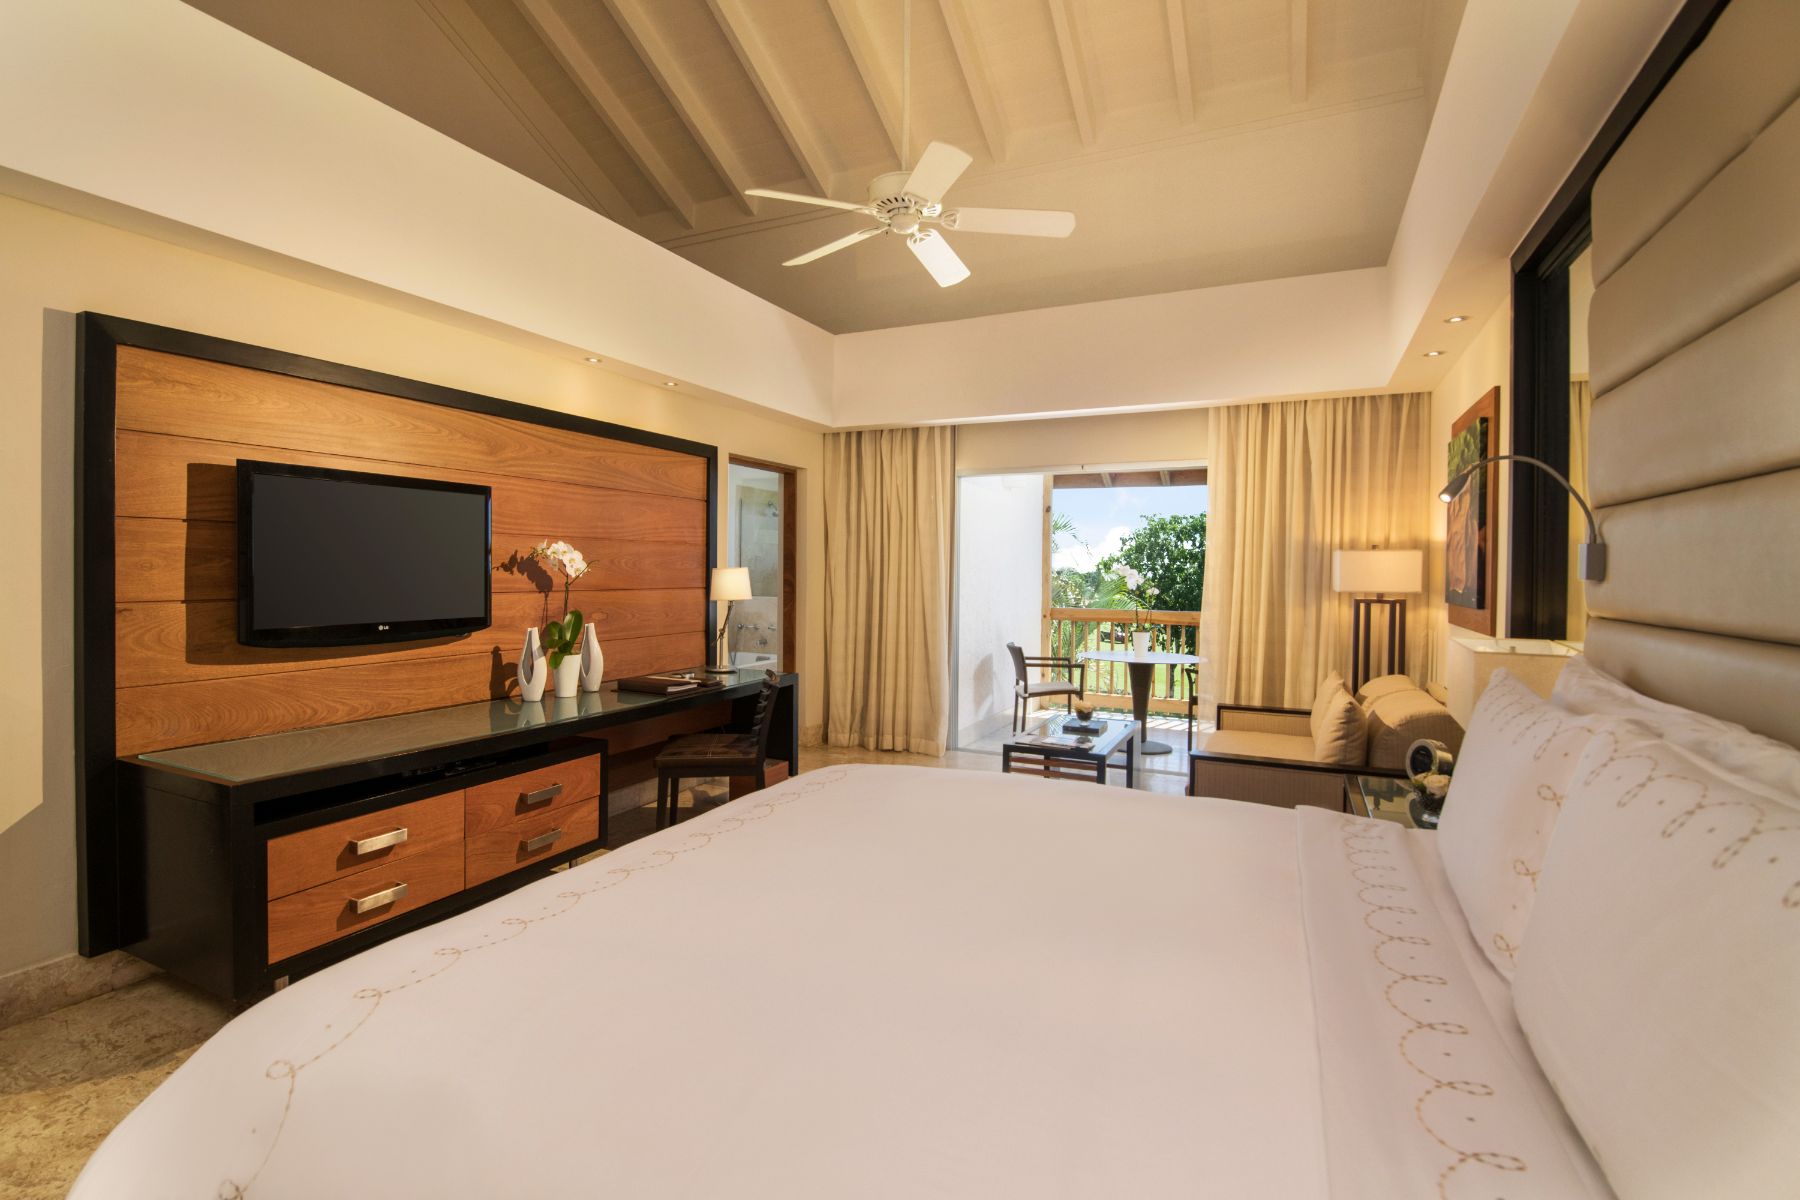 Elite Hotel Rooms Dominican Republic